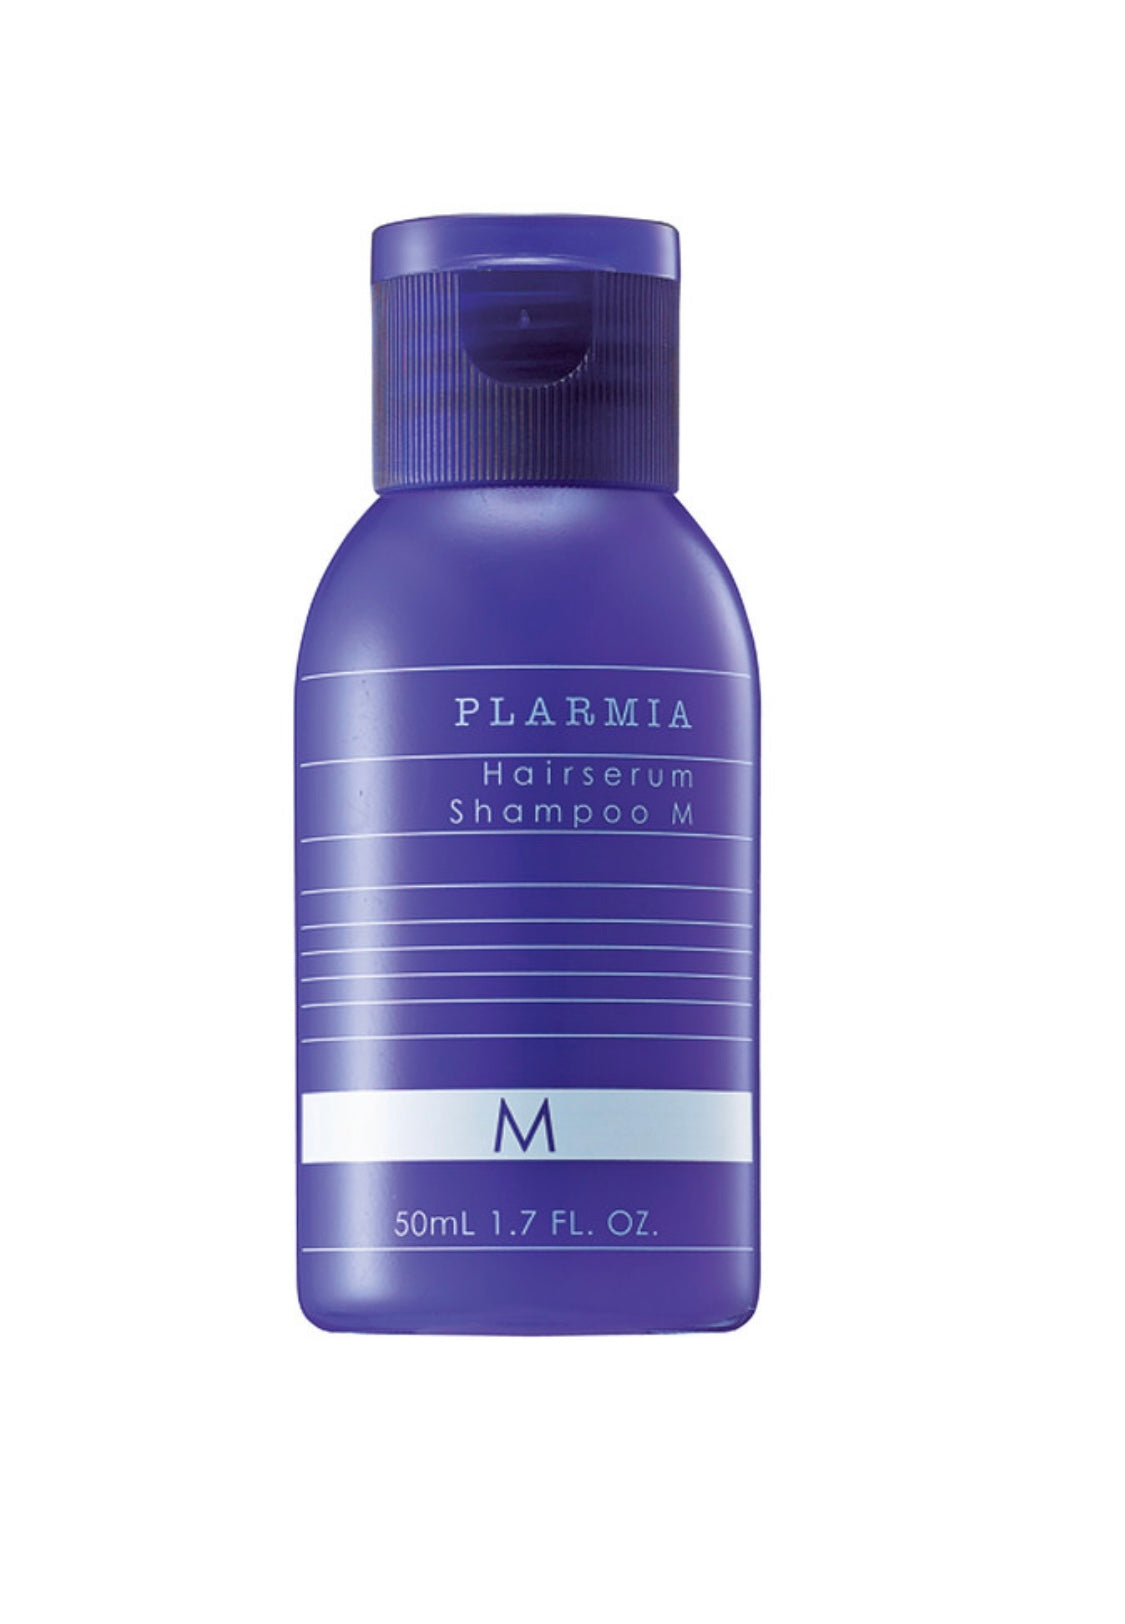 Milbon - Plarmia hairserum shampoo M 1.7 fl. oz. / 50 ml